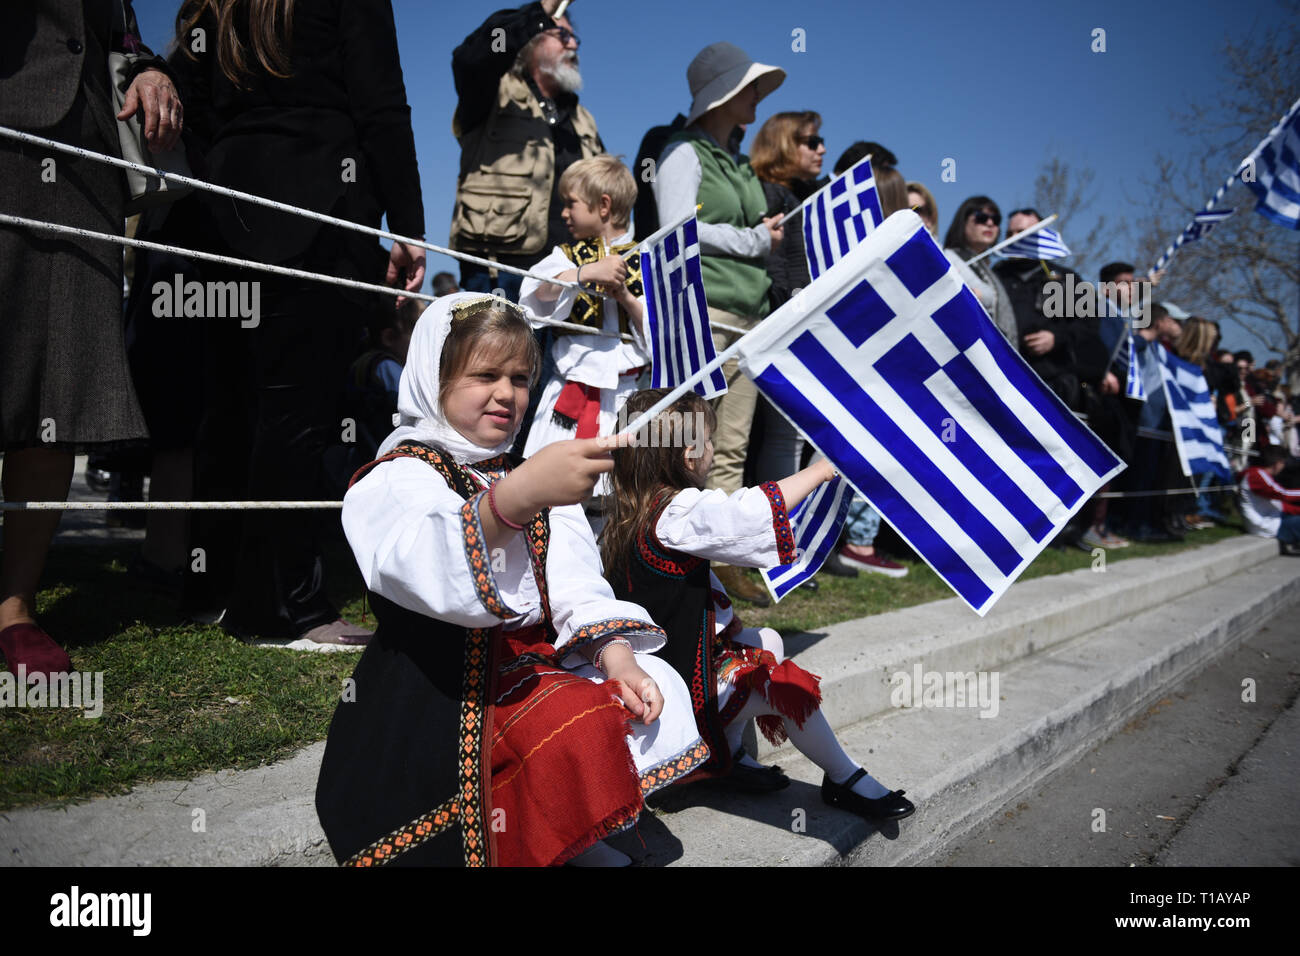 Thessalonique, Grèce. Mar 25, 2019. Les enfants vêtus de costumes traditionnels tenir des drapeaux grecs comme ils regarder un défilé. La fête nationale du 25 mars marque le début de la révolution grecque de retour en 1821, qui a abouti à l'indépendance contre les 400 ans de domination ottomane. Pendant le défilé des centaines de personnes ont protesté contre l'accord de Prespa criant des slogans tels que ''Macédoine n'est qu'un, et c'est le Grec''. Prespa est un accord conclu le 12 juin 2018 entre la Grèce et la Macédoine du Nord, sous l'égide des Nations Unies, la résolution d'un différend de longue date sur le NAM Banque D'Images